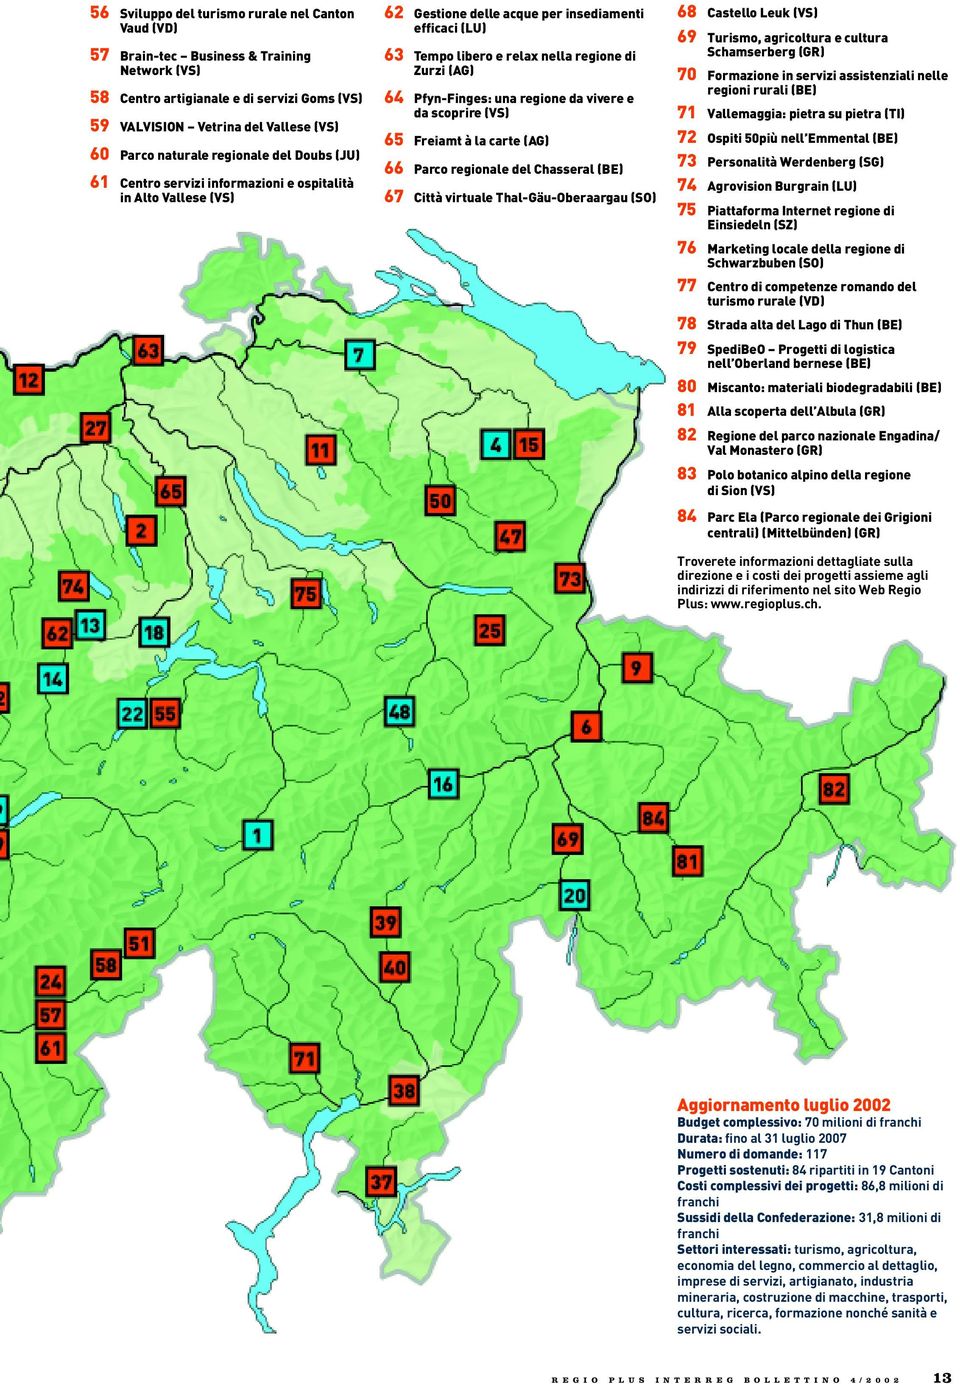 Pfyn-Finges: una regione da vivere e da scoprire (VS) 65 Freiamt à la carte (AG) 66 Parco regionale del Chasseral (BE) 67 Città virtuale Thal-Gäu-Oberaargau (SO) 68 Castello Leuk (VS) 69 Turismo,